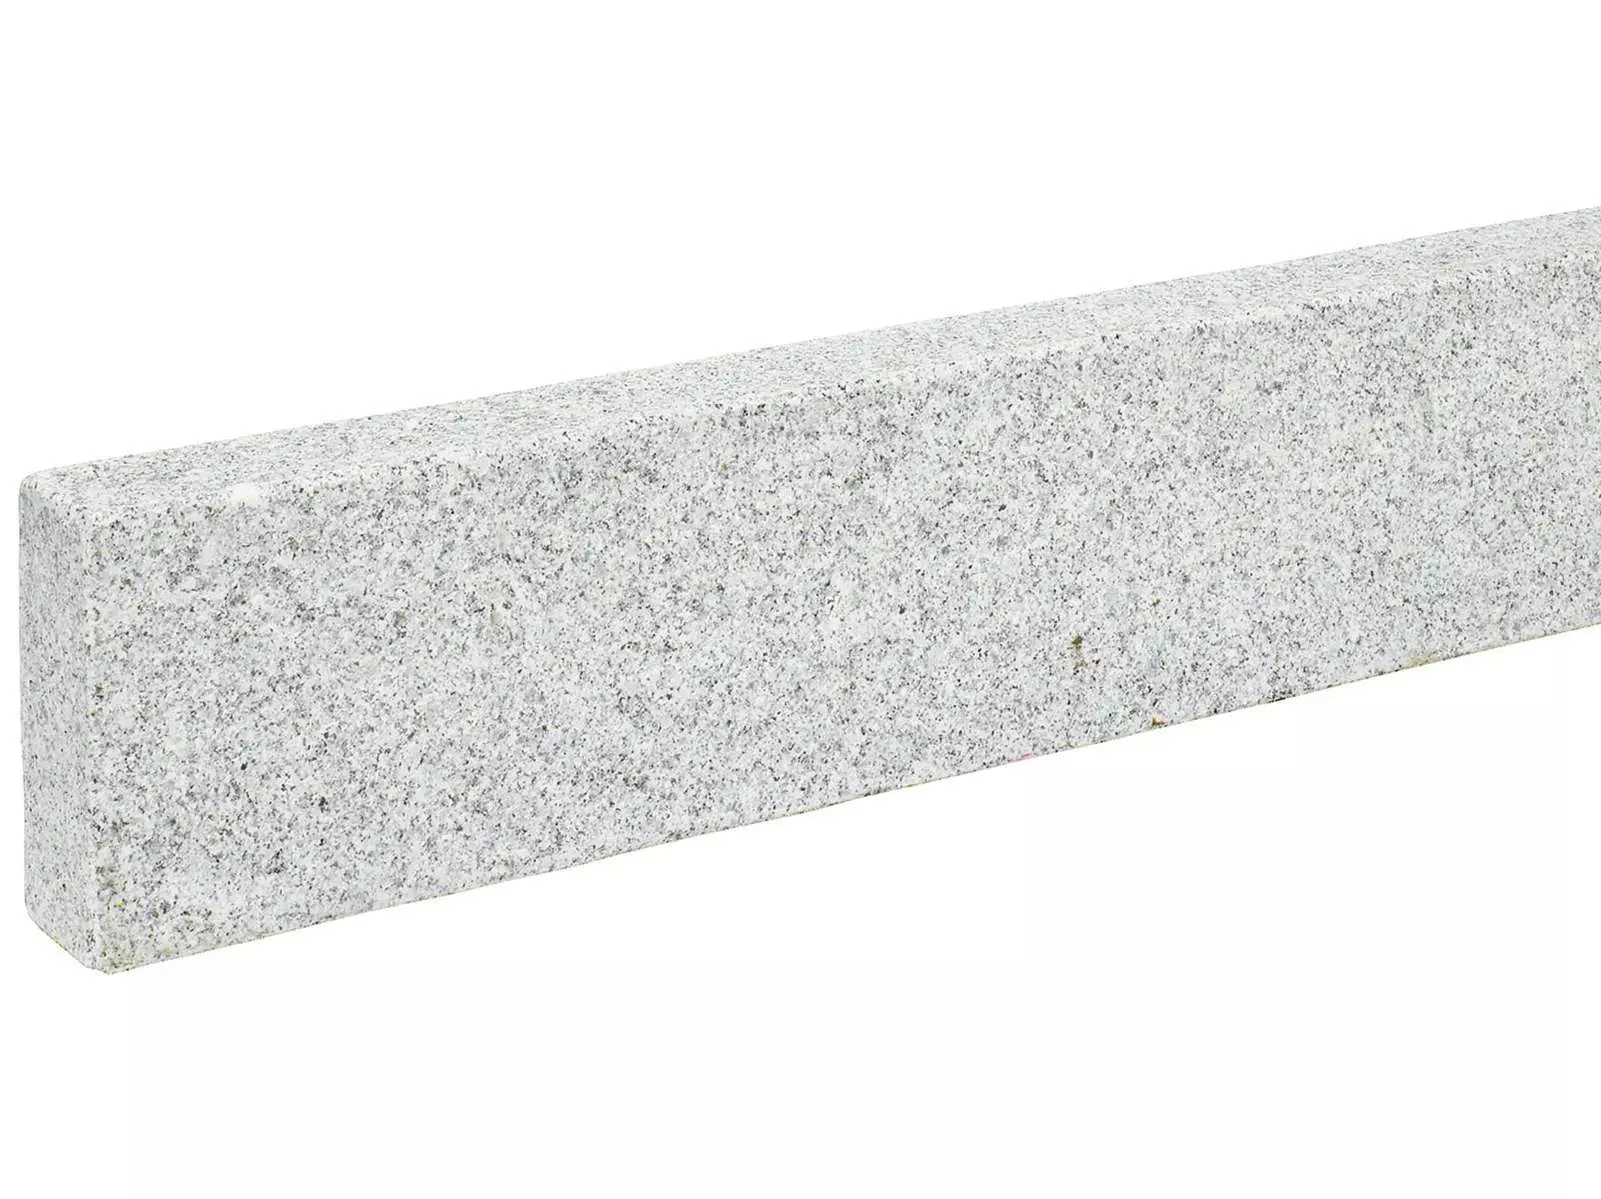 Randsteine aus grauem Granit . gesägt und geflammt